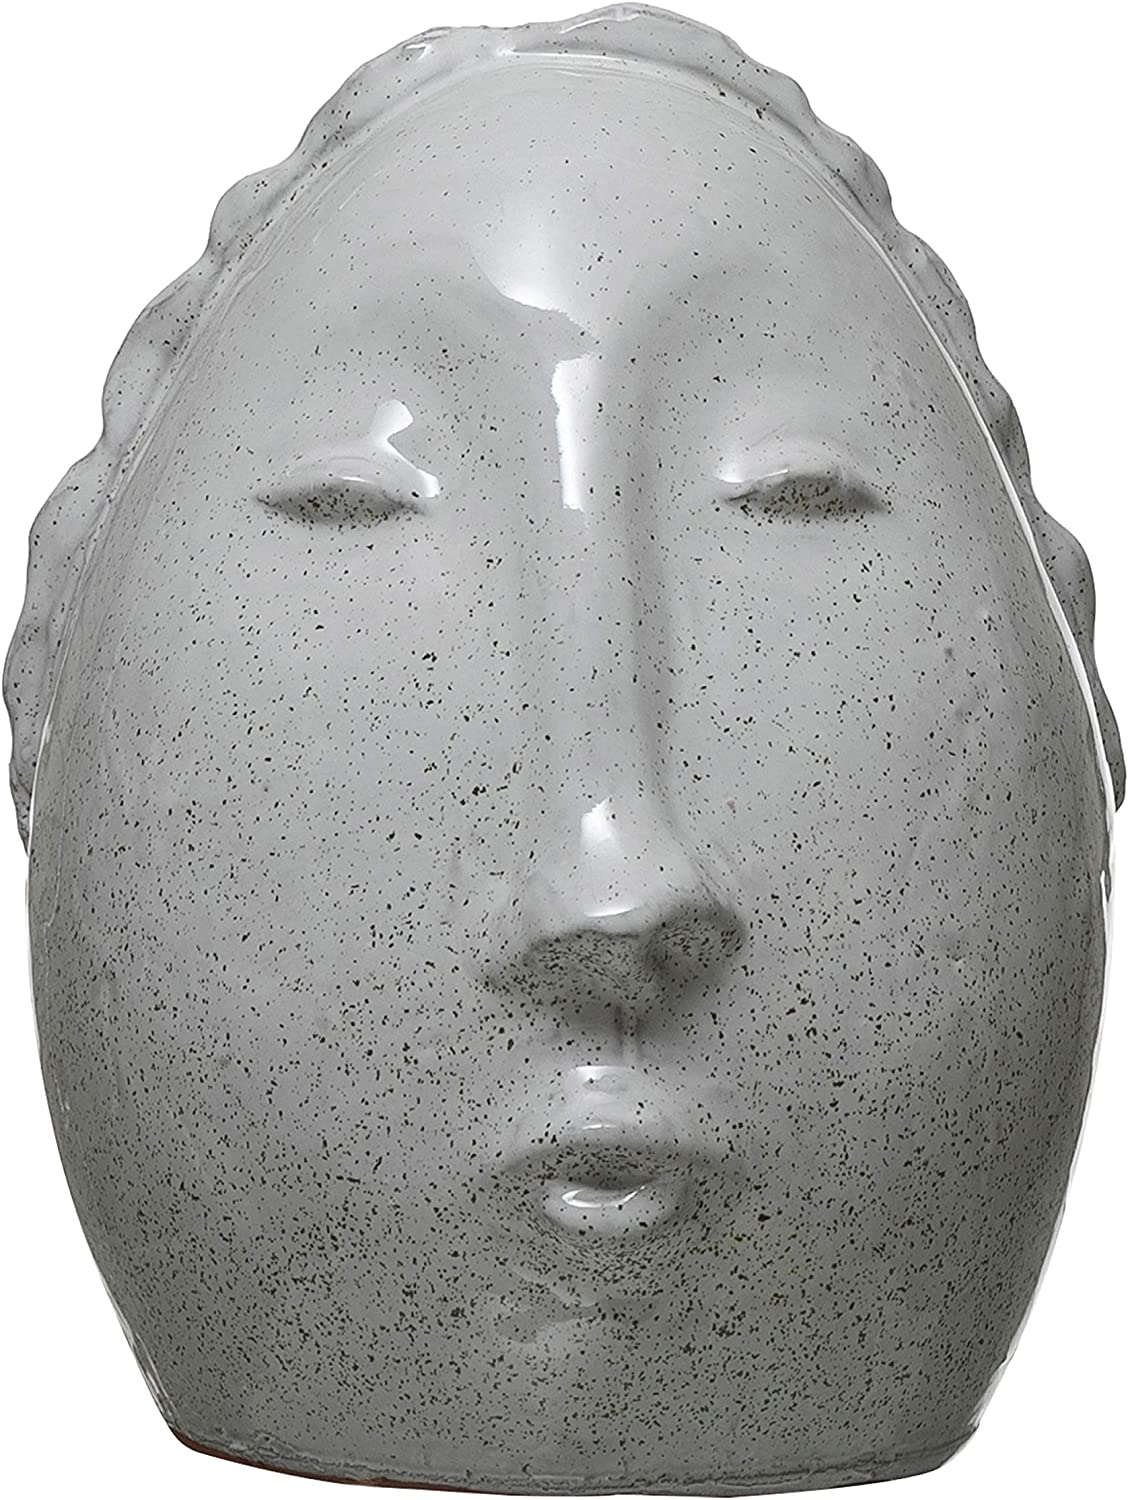 TerraCotta Face Vase 7"